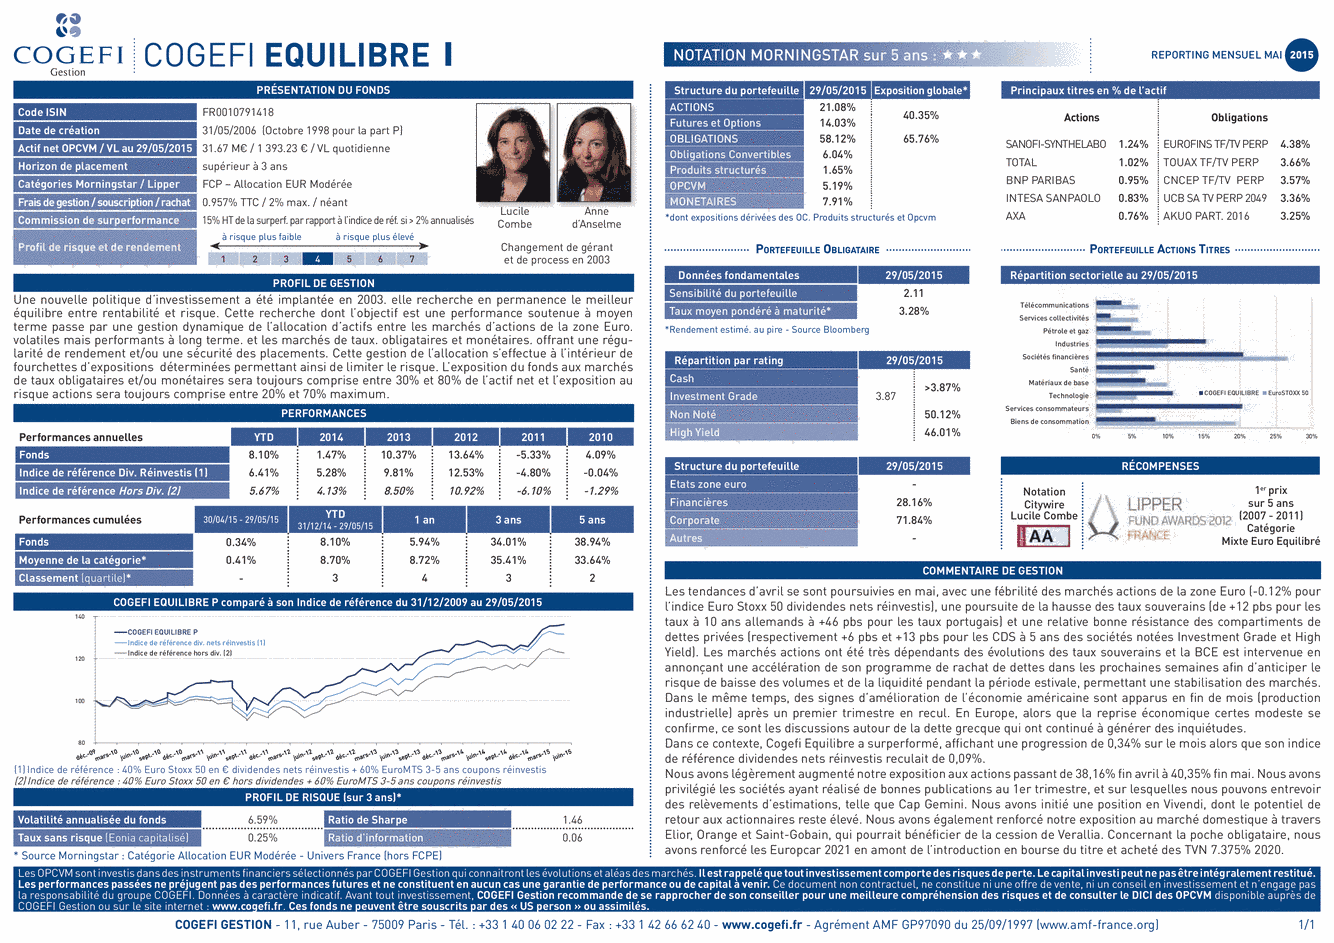 Fiche Produit Cogefi Equilibre I - 31/05/2015 - Français